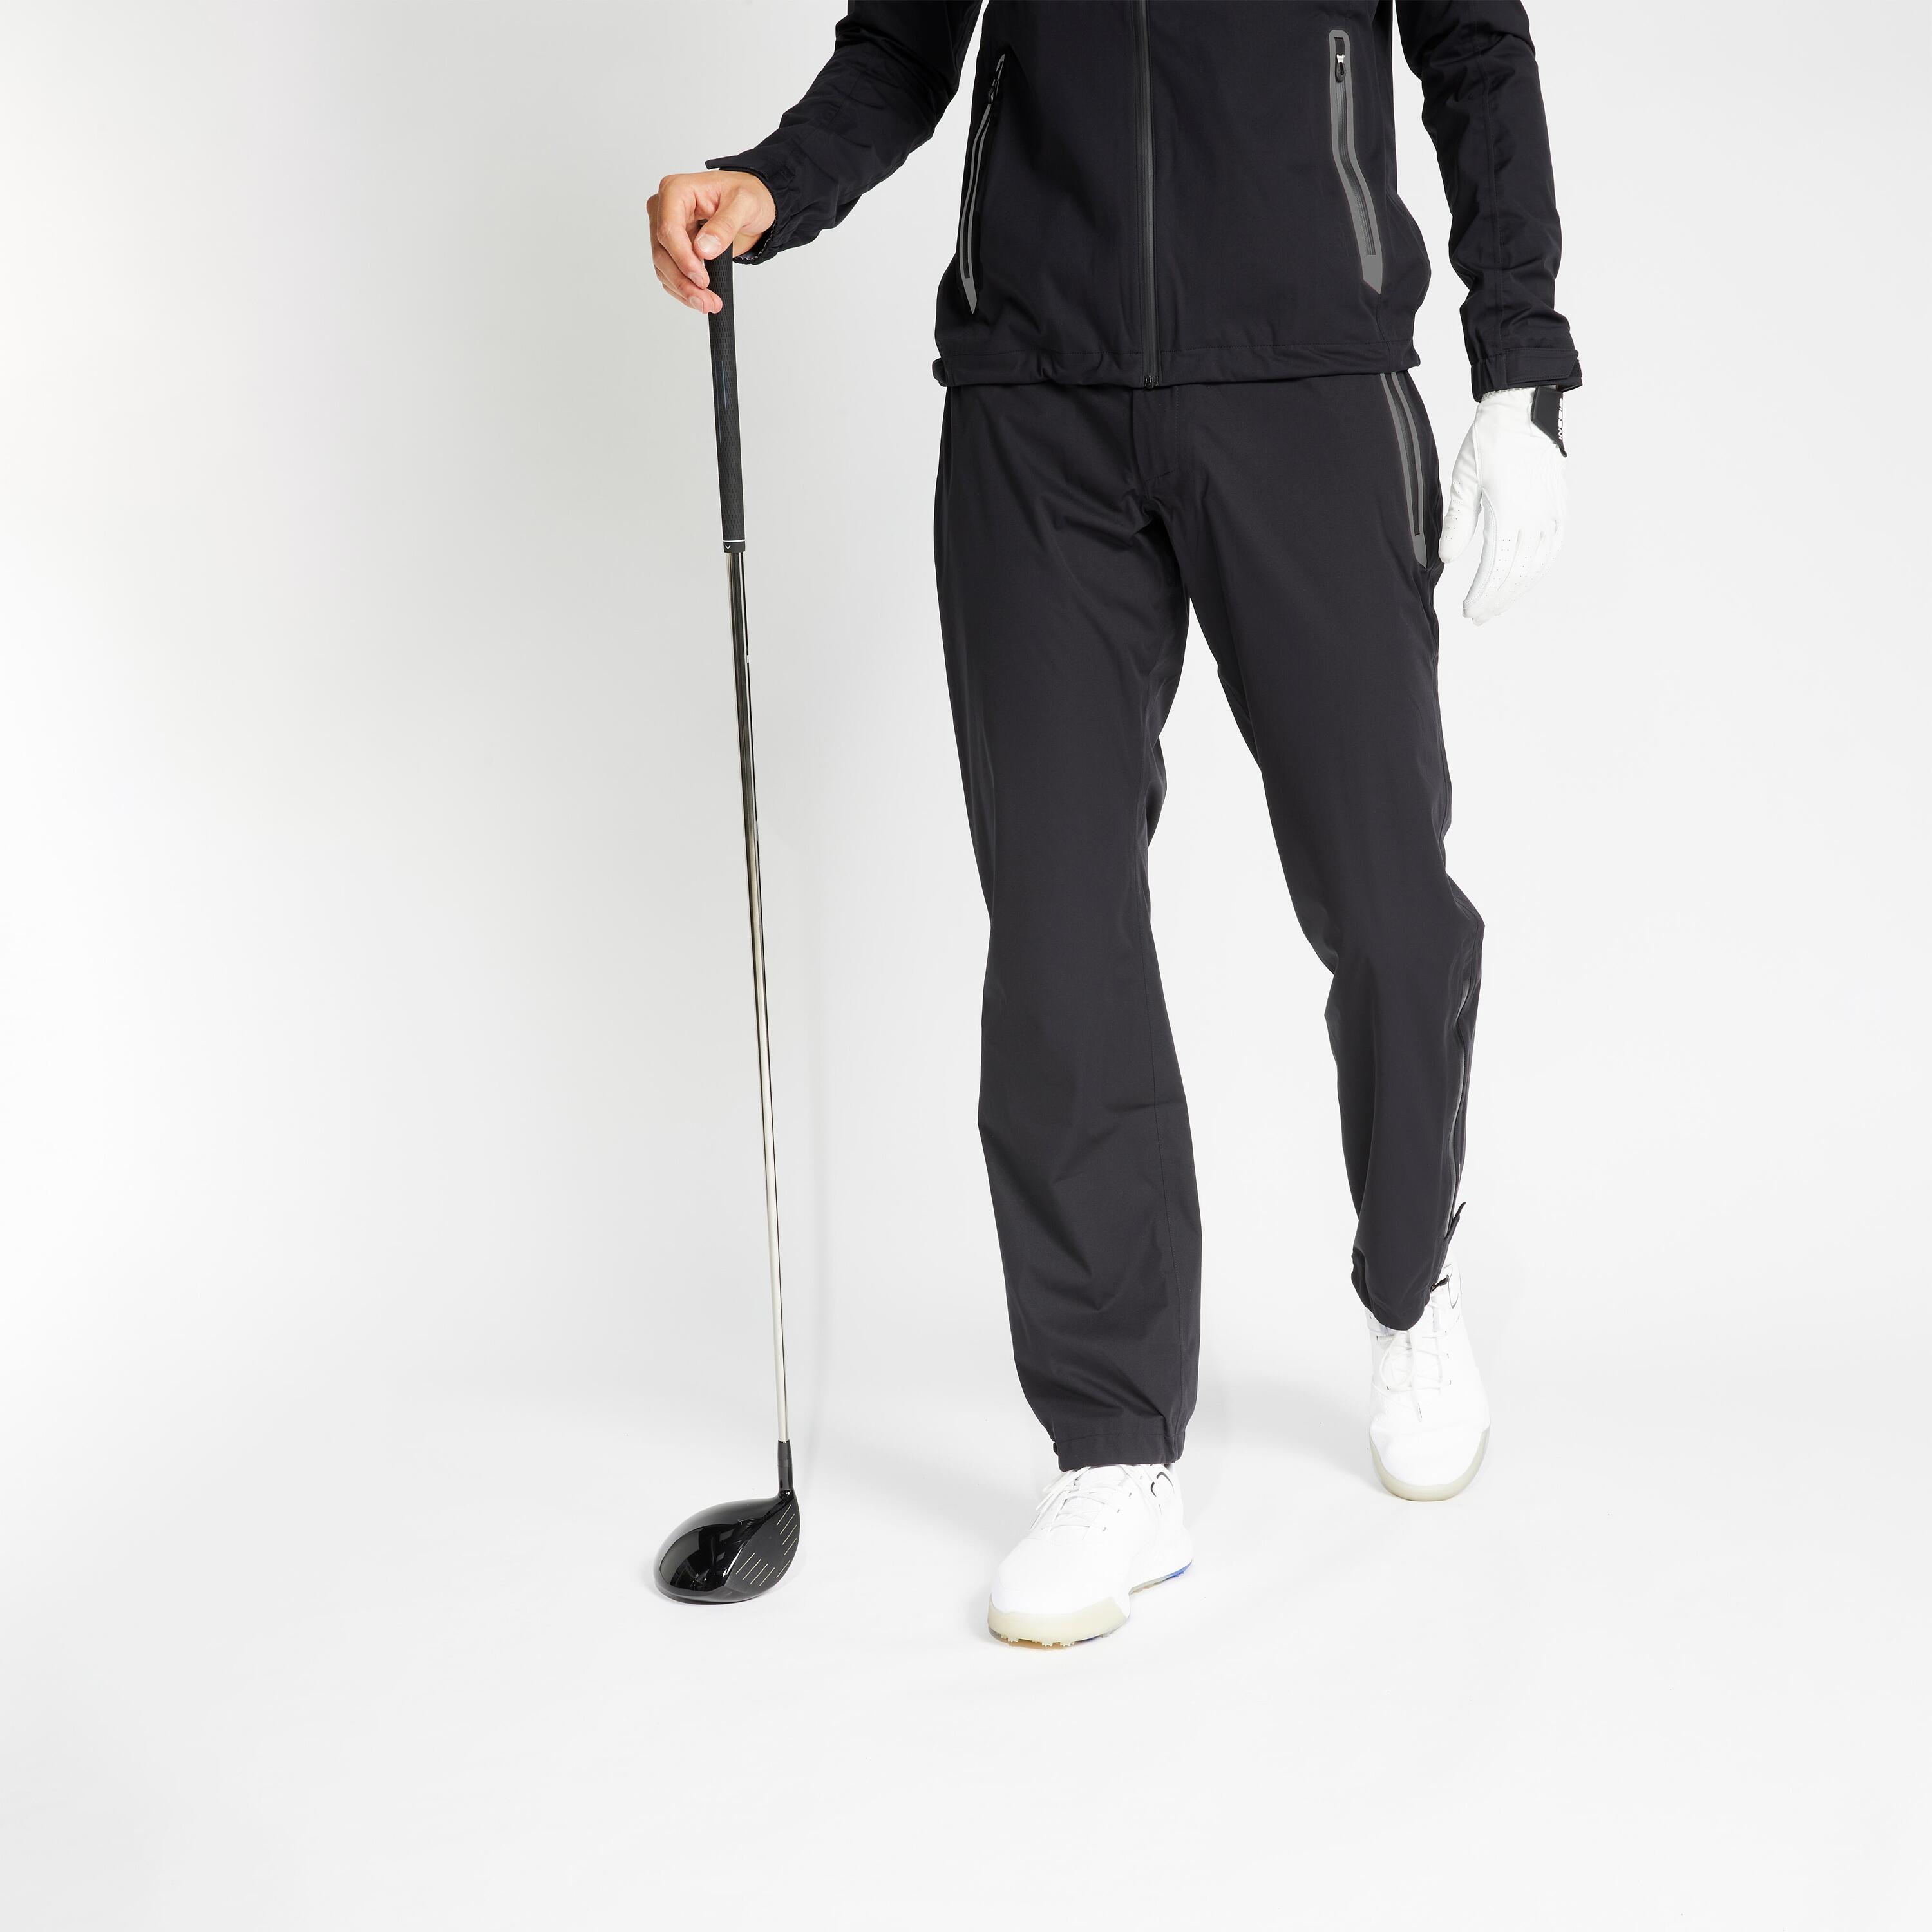 INESIS Men's Golf Waterproof Rain Trousers - RW500 Black